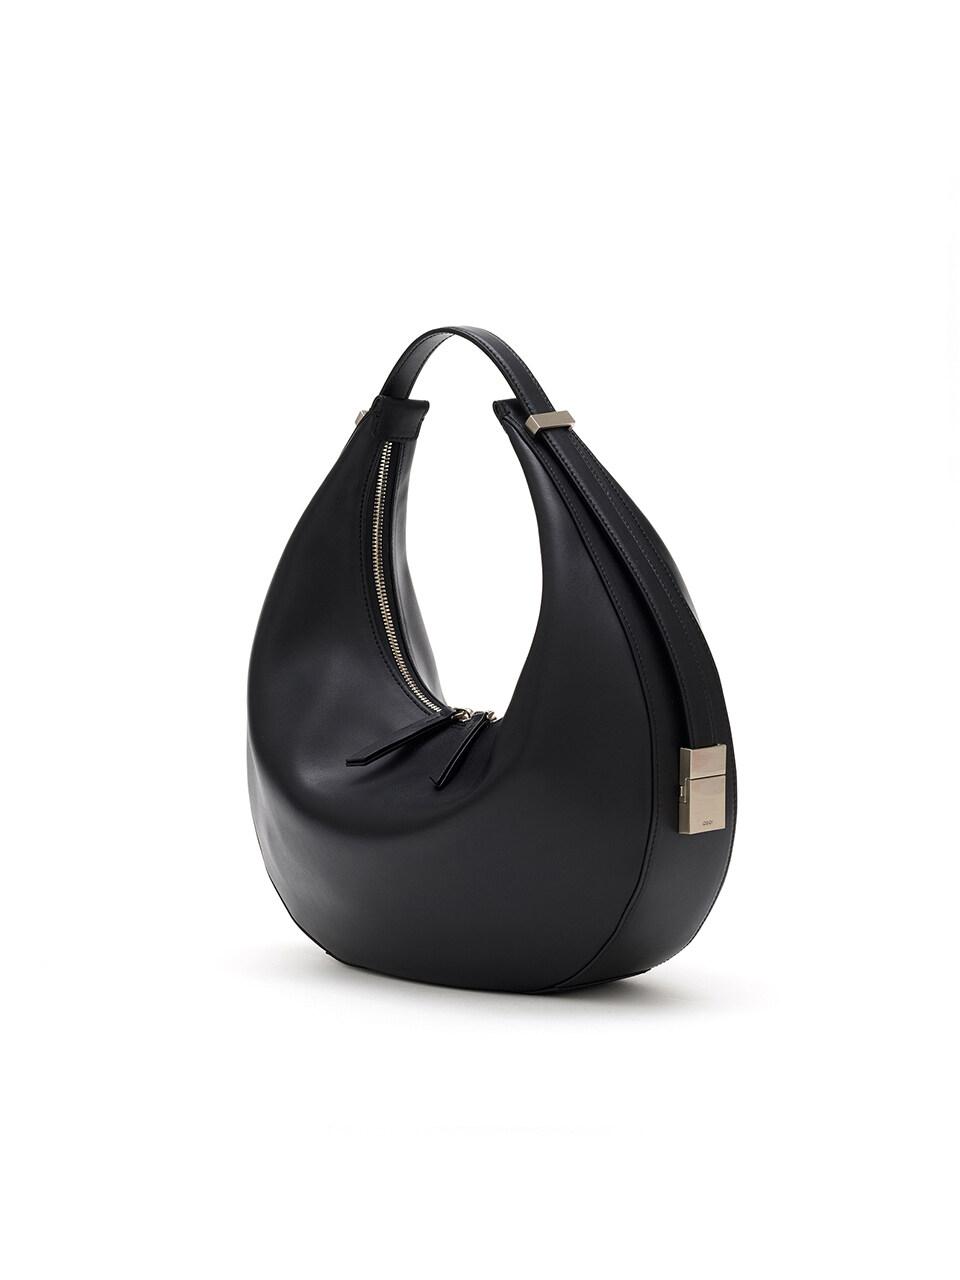 OSOI Leather Toni Bag in Black | Lyst